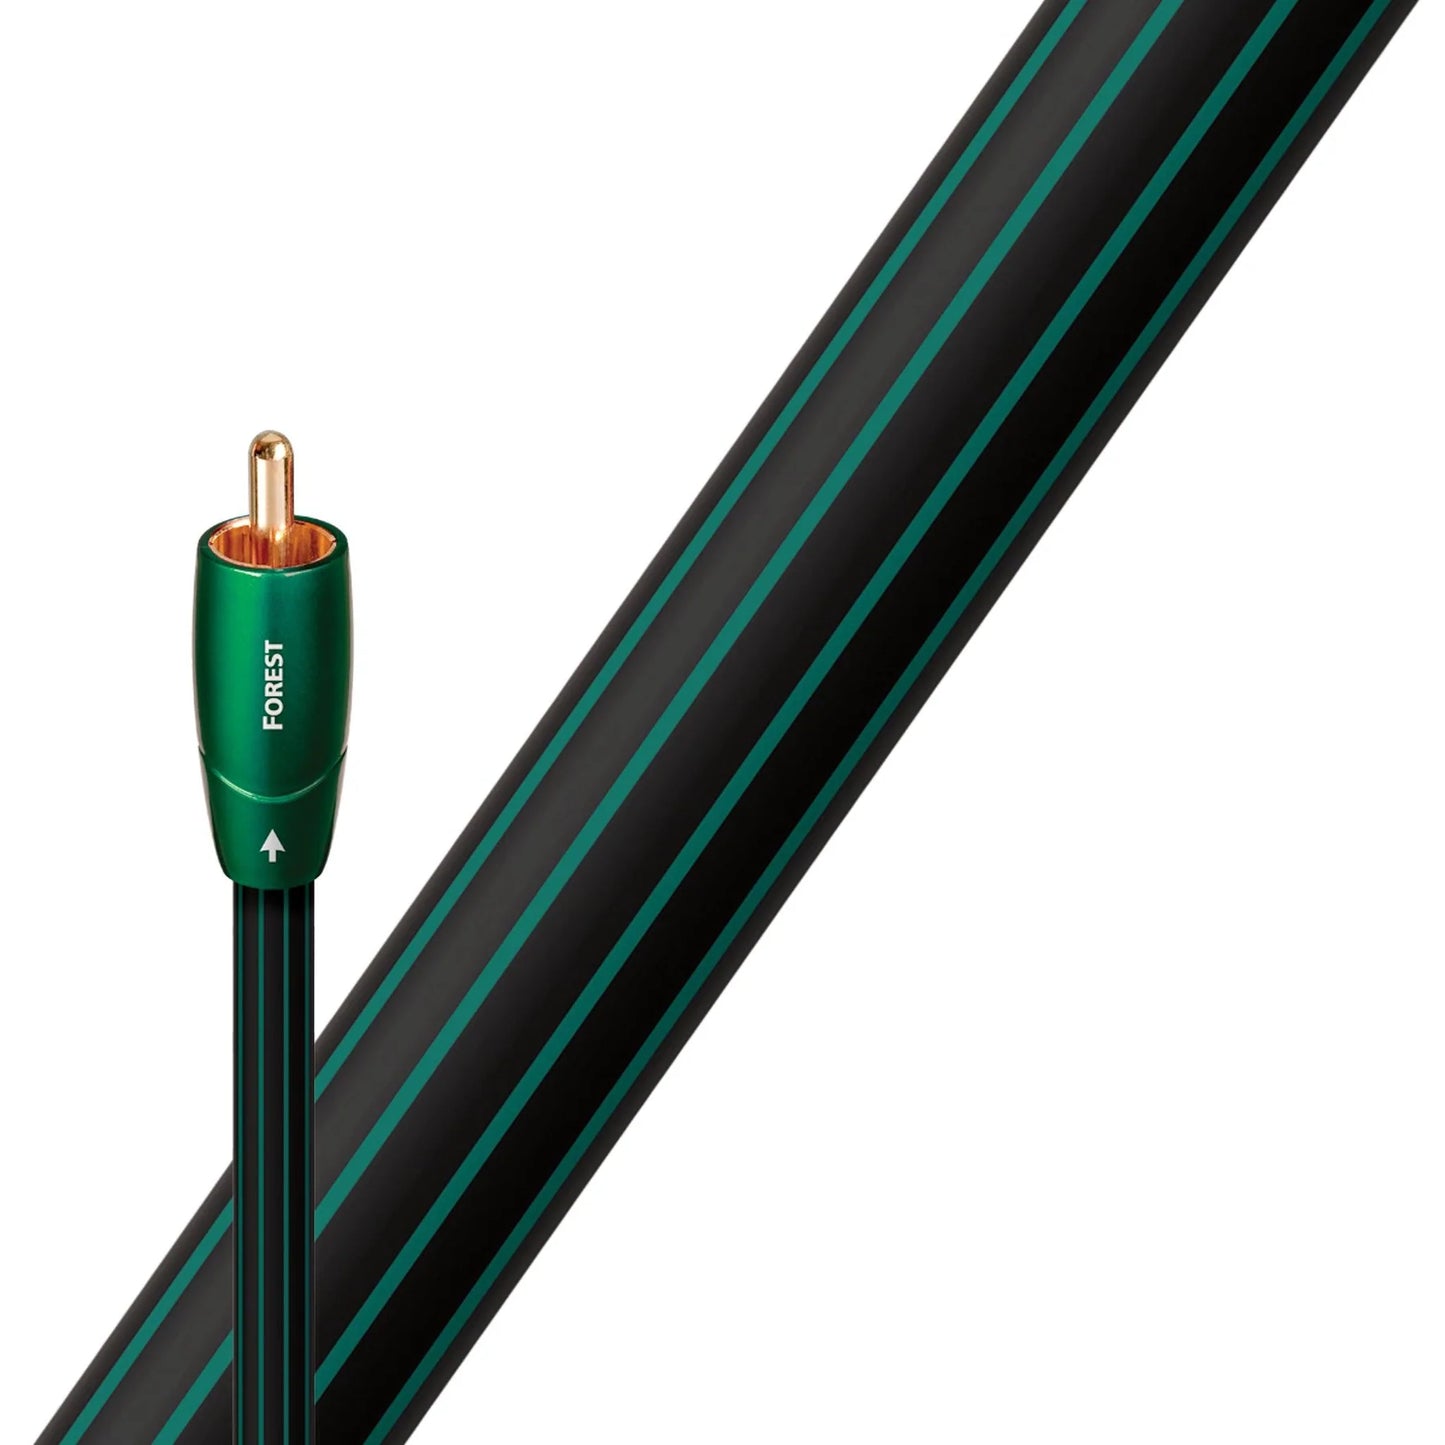 AudioQuest digitalni koaksialni kabel Forest COAX, 0.5% srebra, 0.75m do 5m